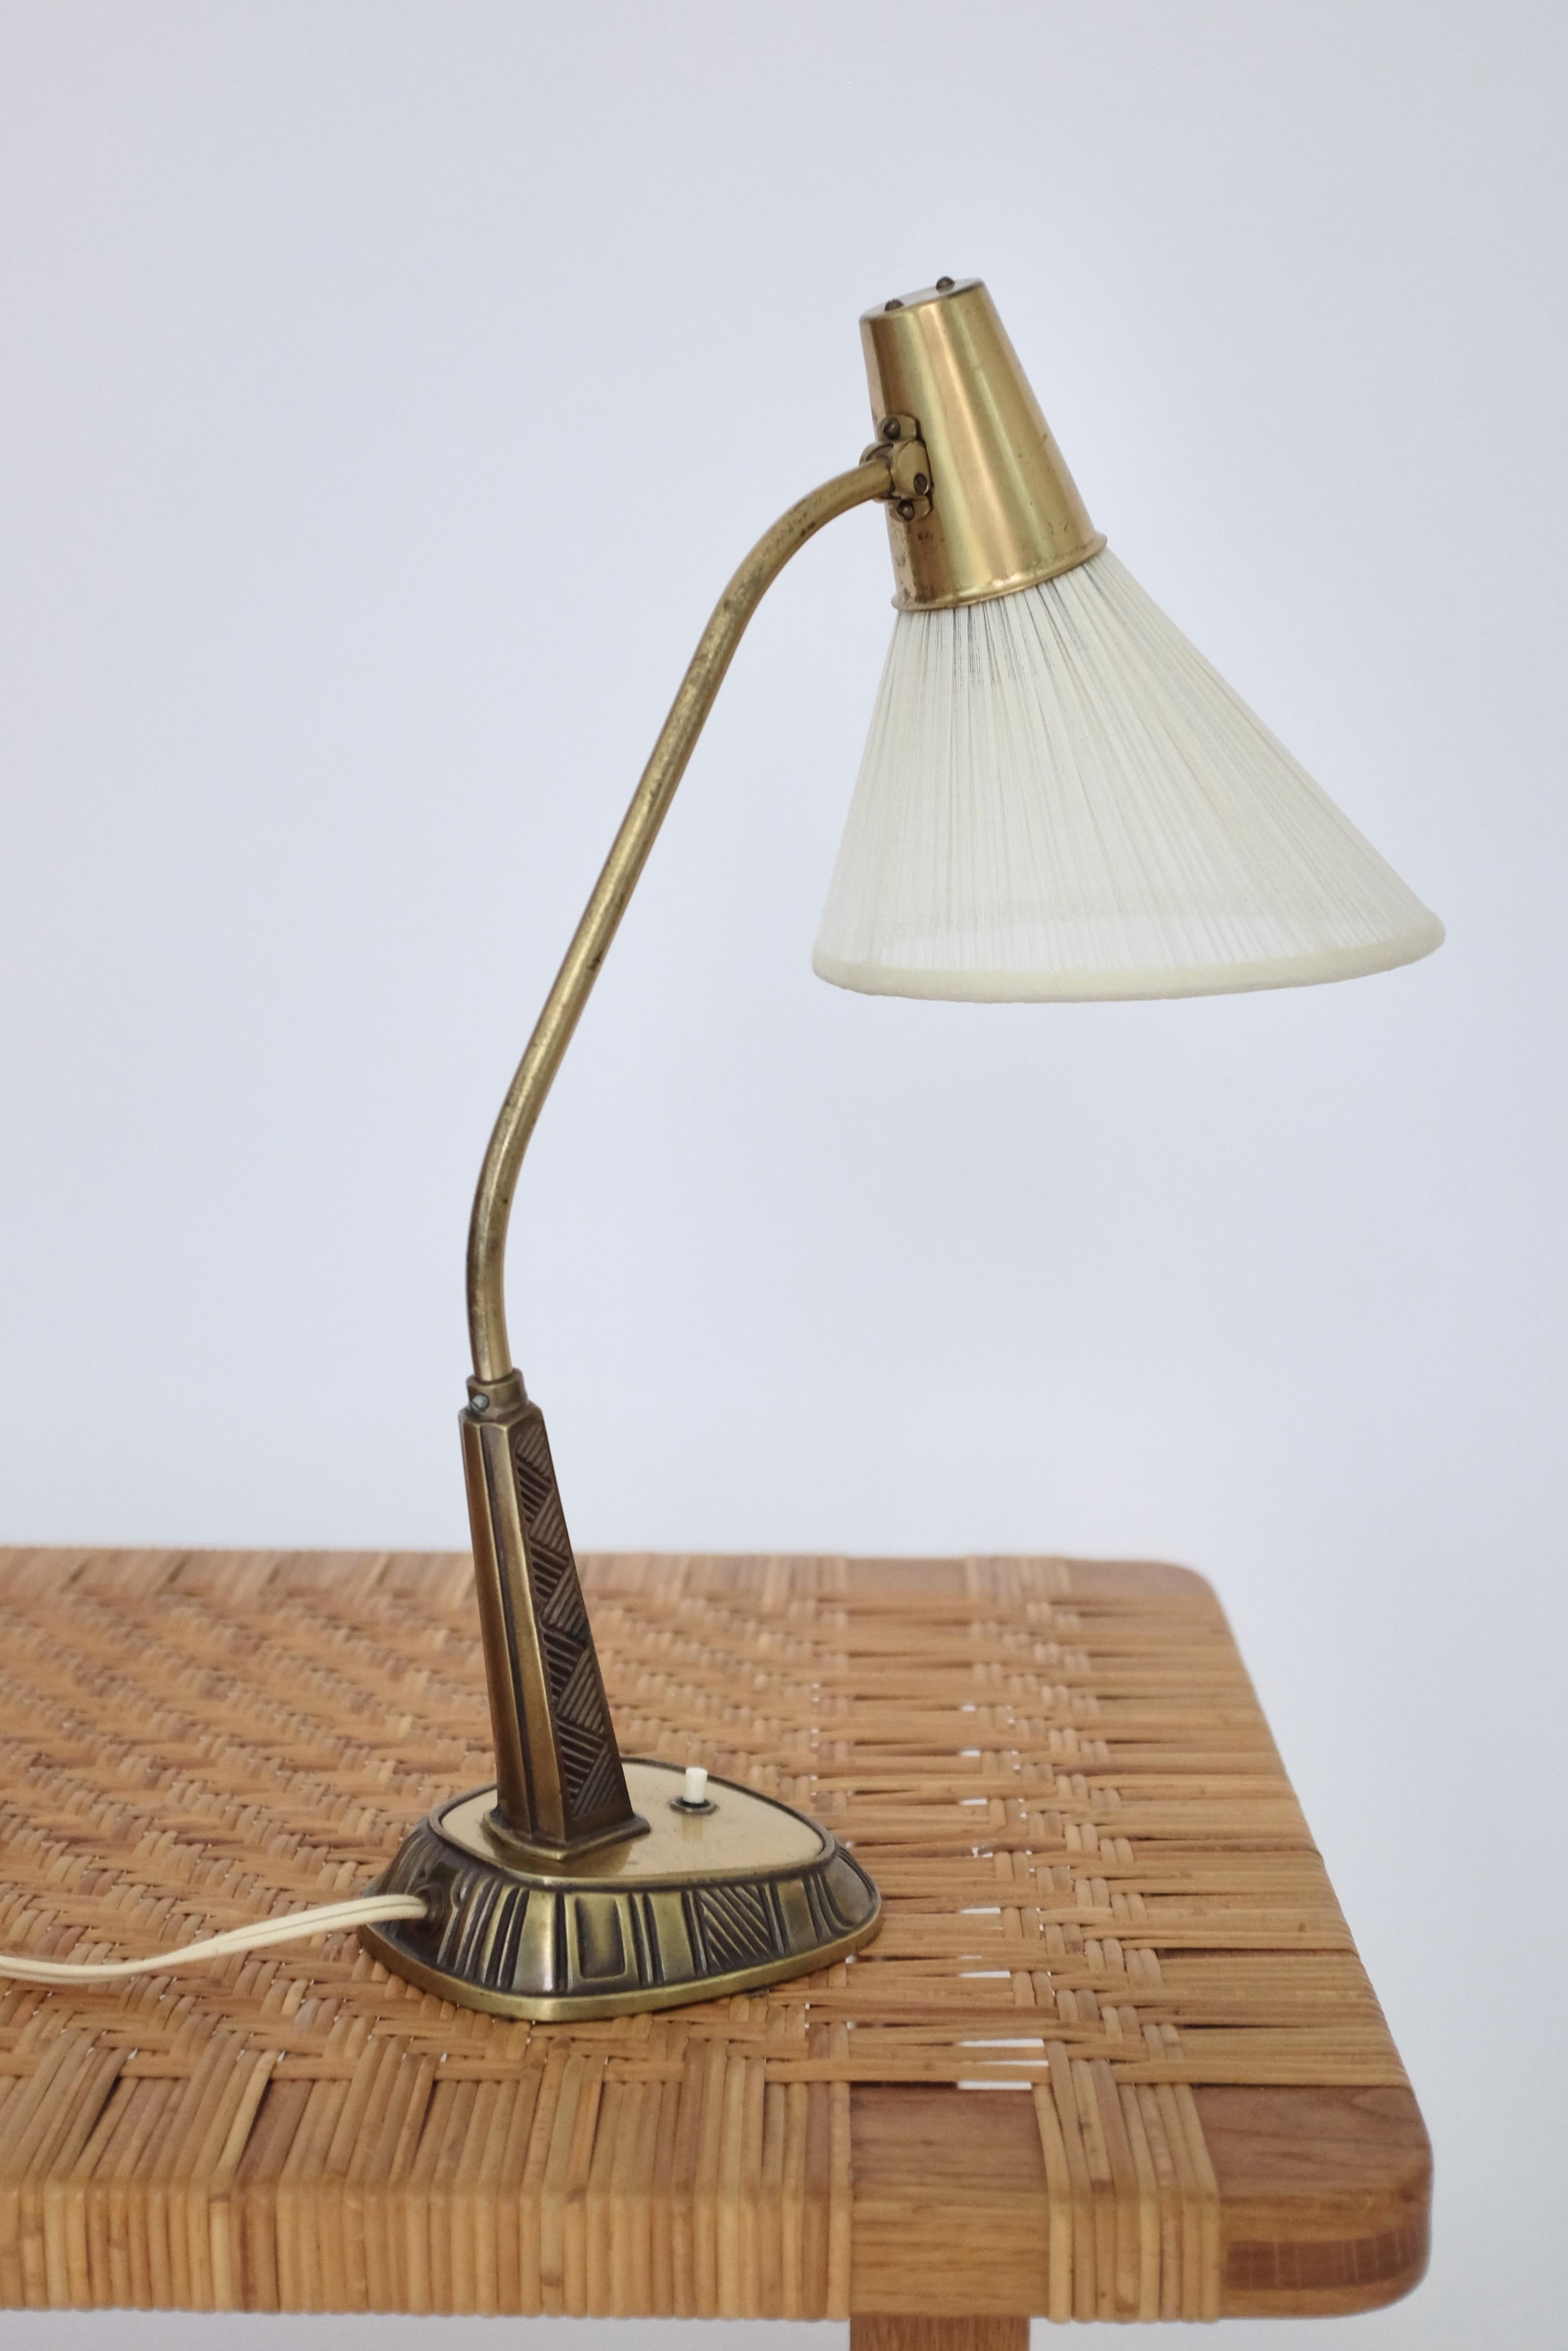 Magnifique lampe de table en laiton des années 1950, modèle E1139, réalisée par Sonja Katzin pour ASEA. Motif rayé sculpté sur le pied de la lampe avec bras courbé och nouvel abat-jour dans le design original. Le laiton est usé par l'âge. Dans